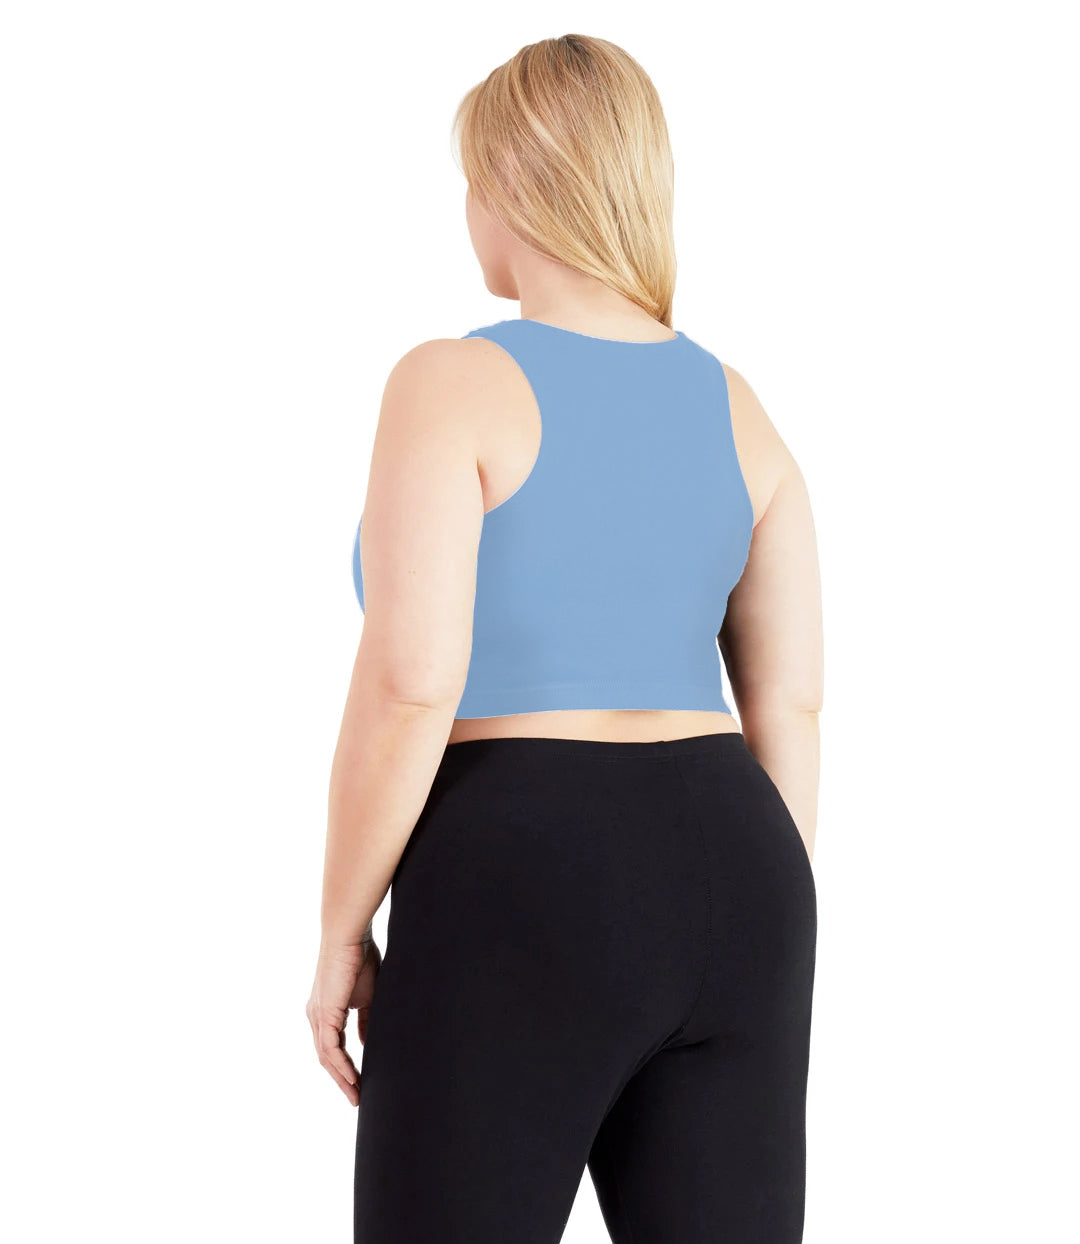 Plus size woman, facing back, wearing JunoActive plus size UltraKnit V-Neck Bras in Soft Blue. The woman is wearing a pair of Black JunoActive leggings.